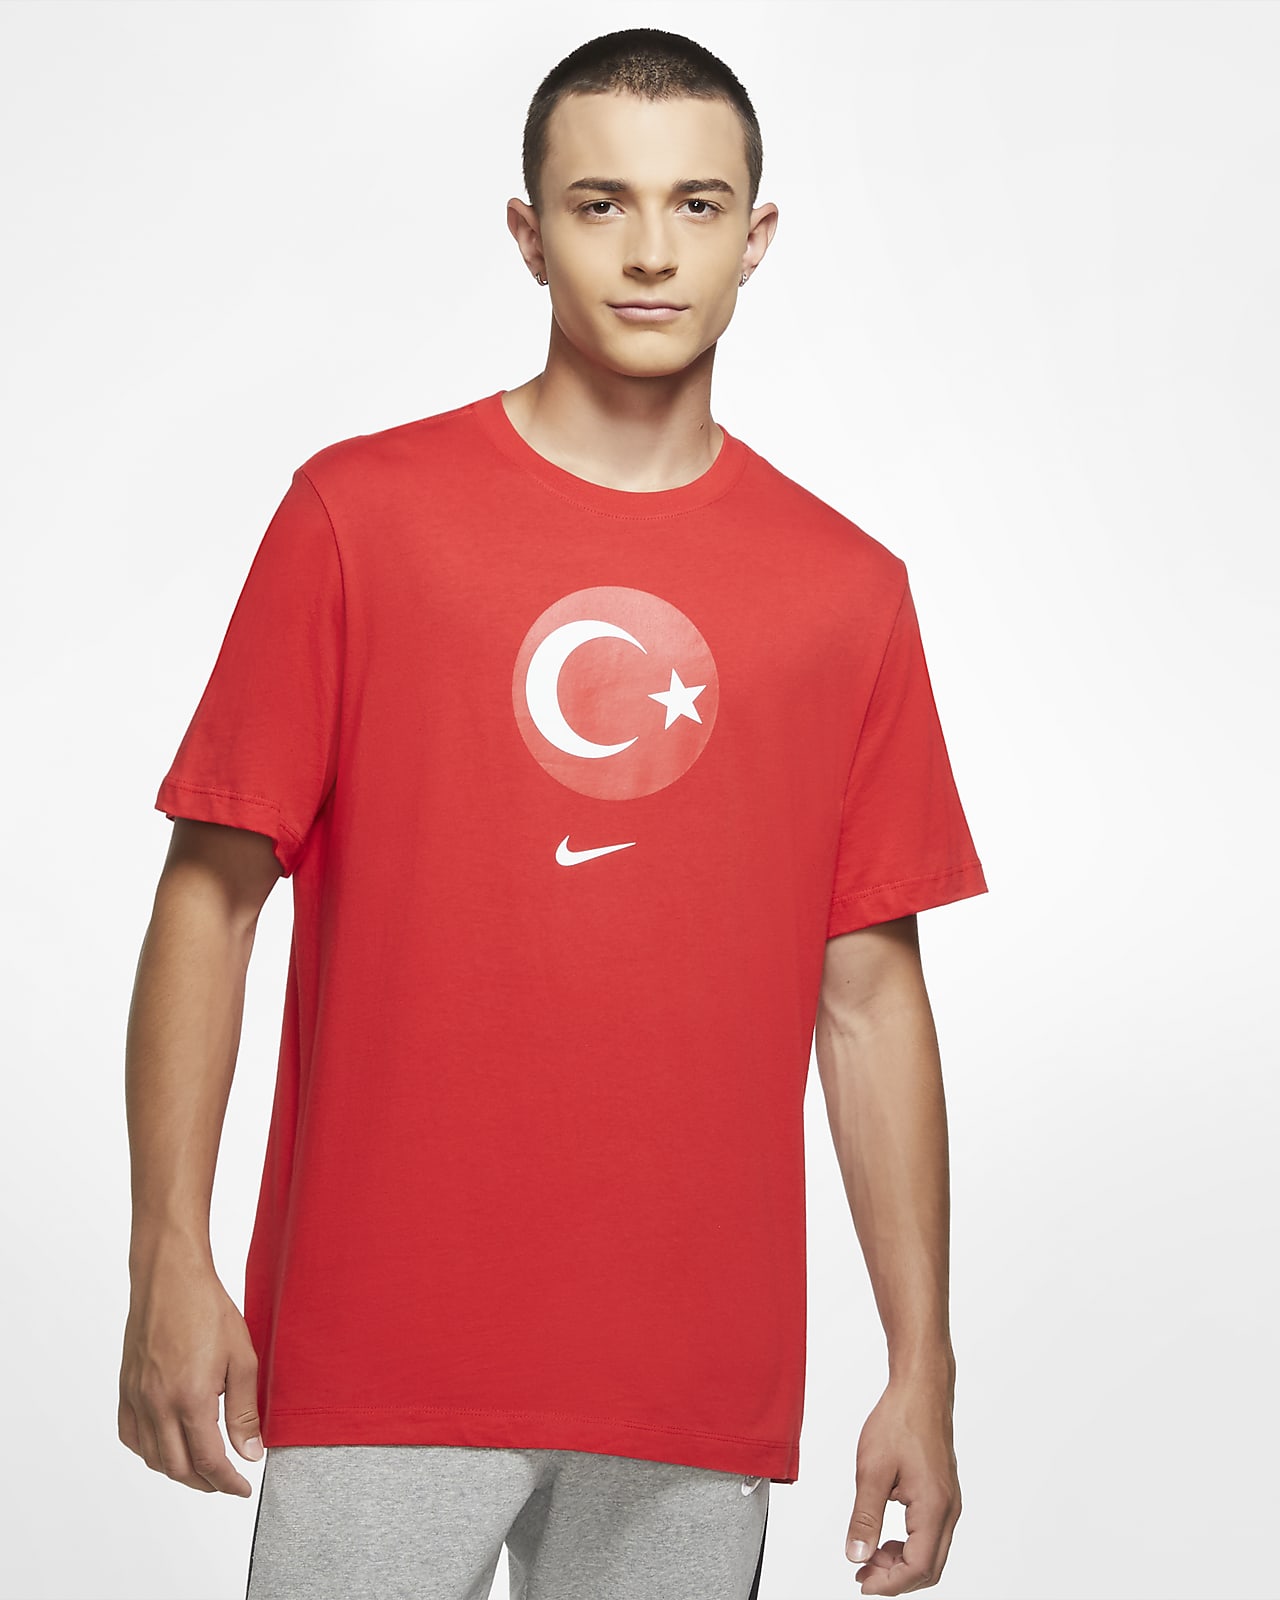 Türkei EM 2020 Fanshirt Männer Fanartikel Fußball Fan Herren T-Shirt Trikot 